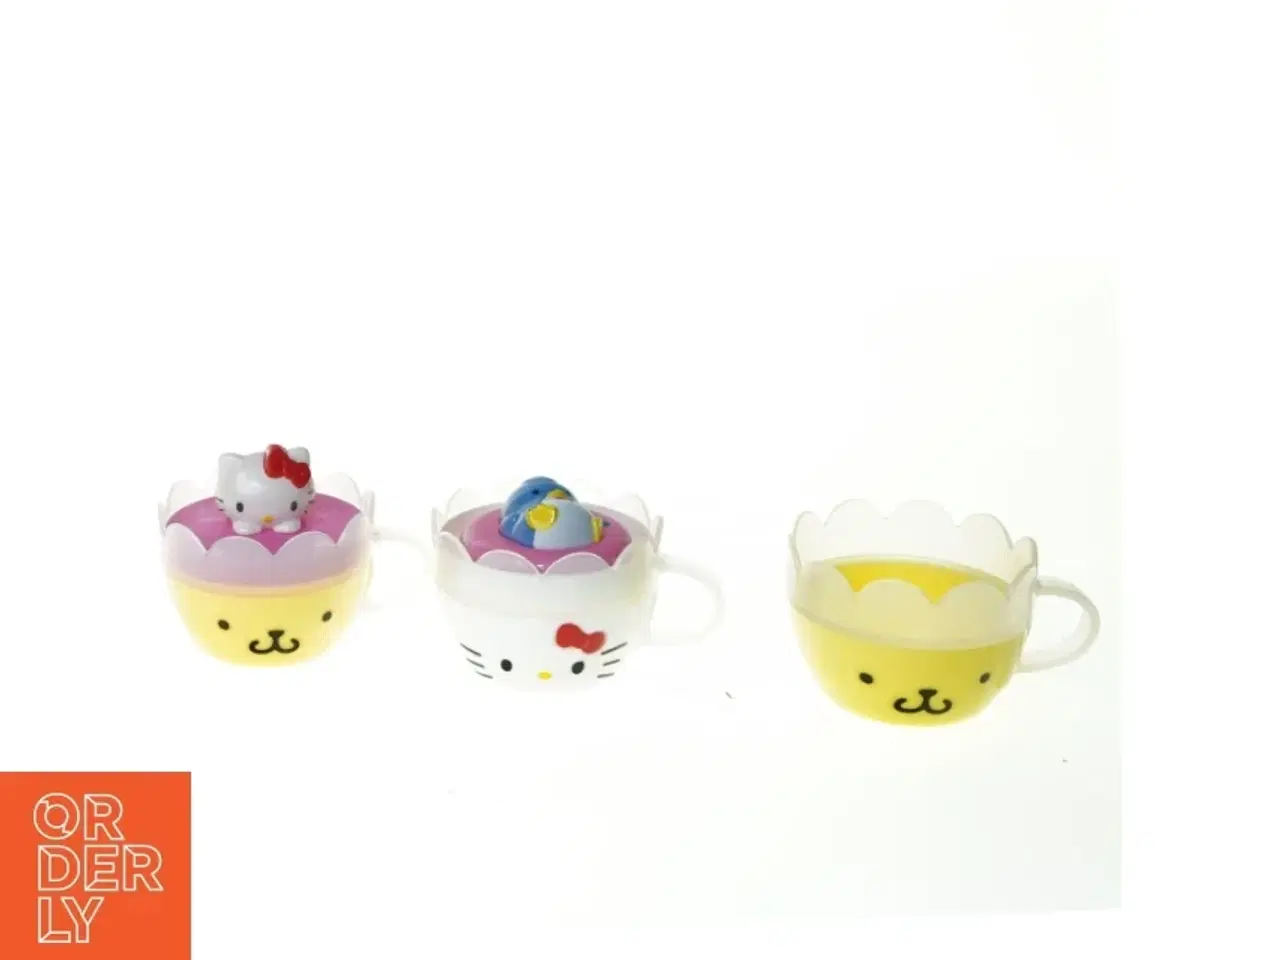 Billede 1 - Kopper med Hello Kitty motiv fra Sanrio (str. 7 x 5 cm)